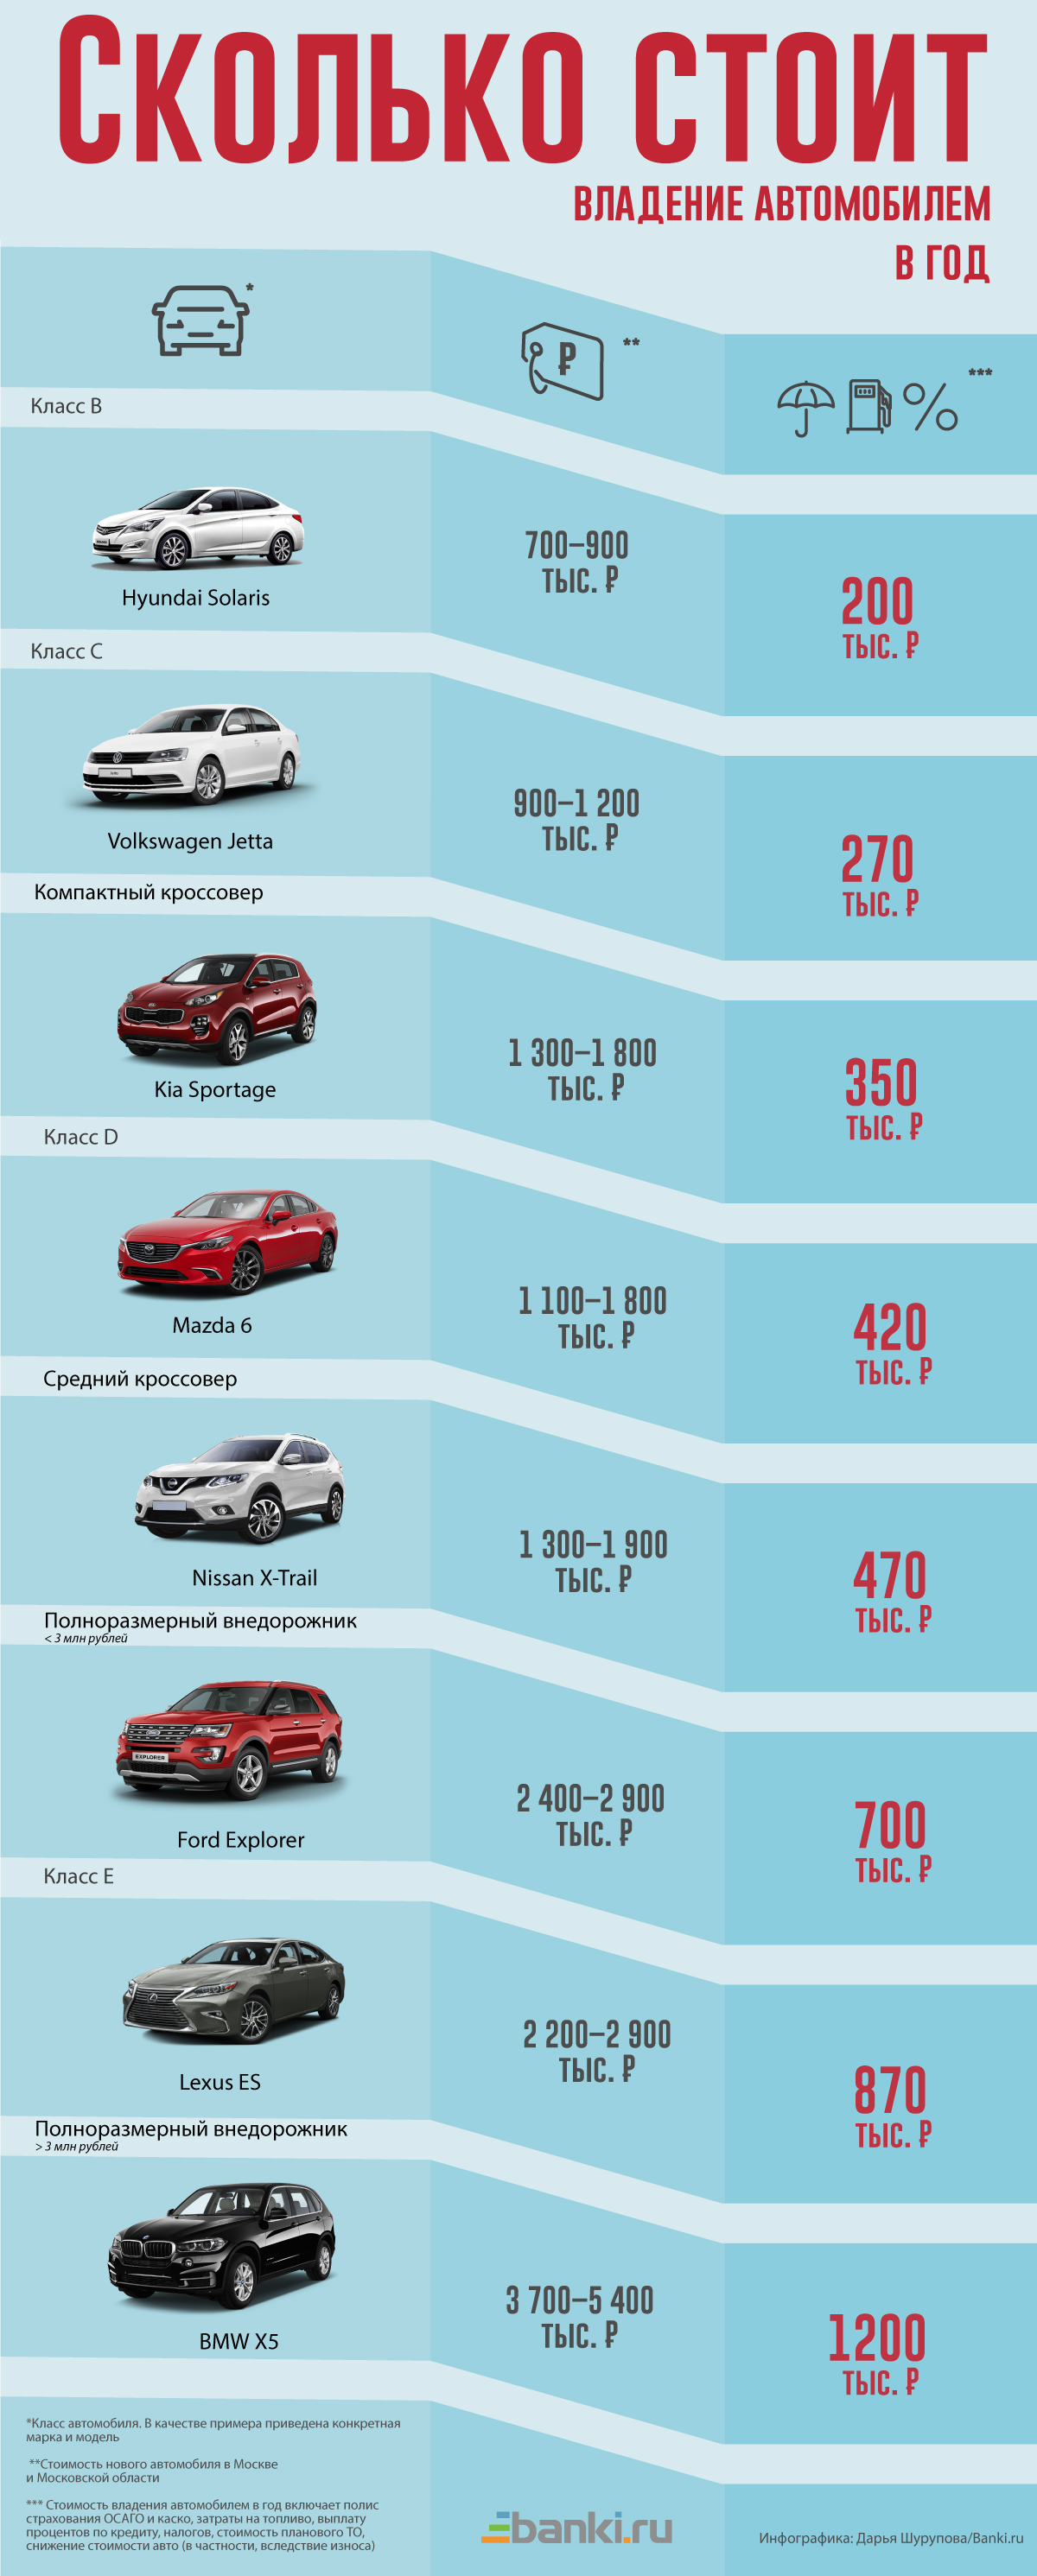 Стоимость техобслуживания автомобилей по маркам